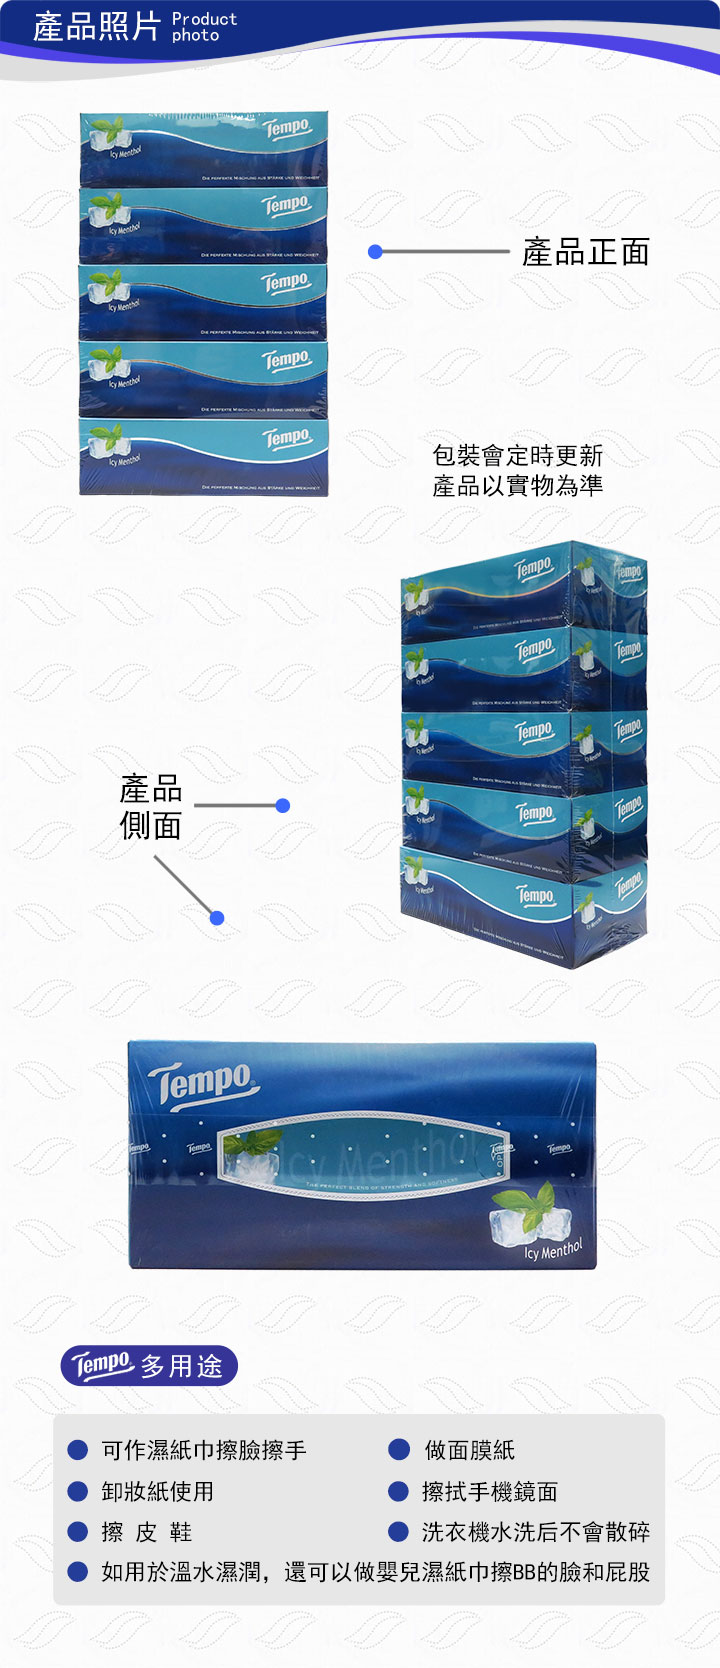 紙巾-Tempo得寶盒裝紙巾(冰極薄荷) 5盒